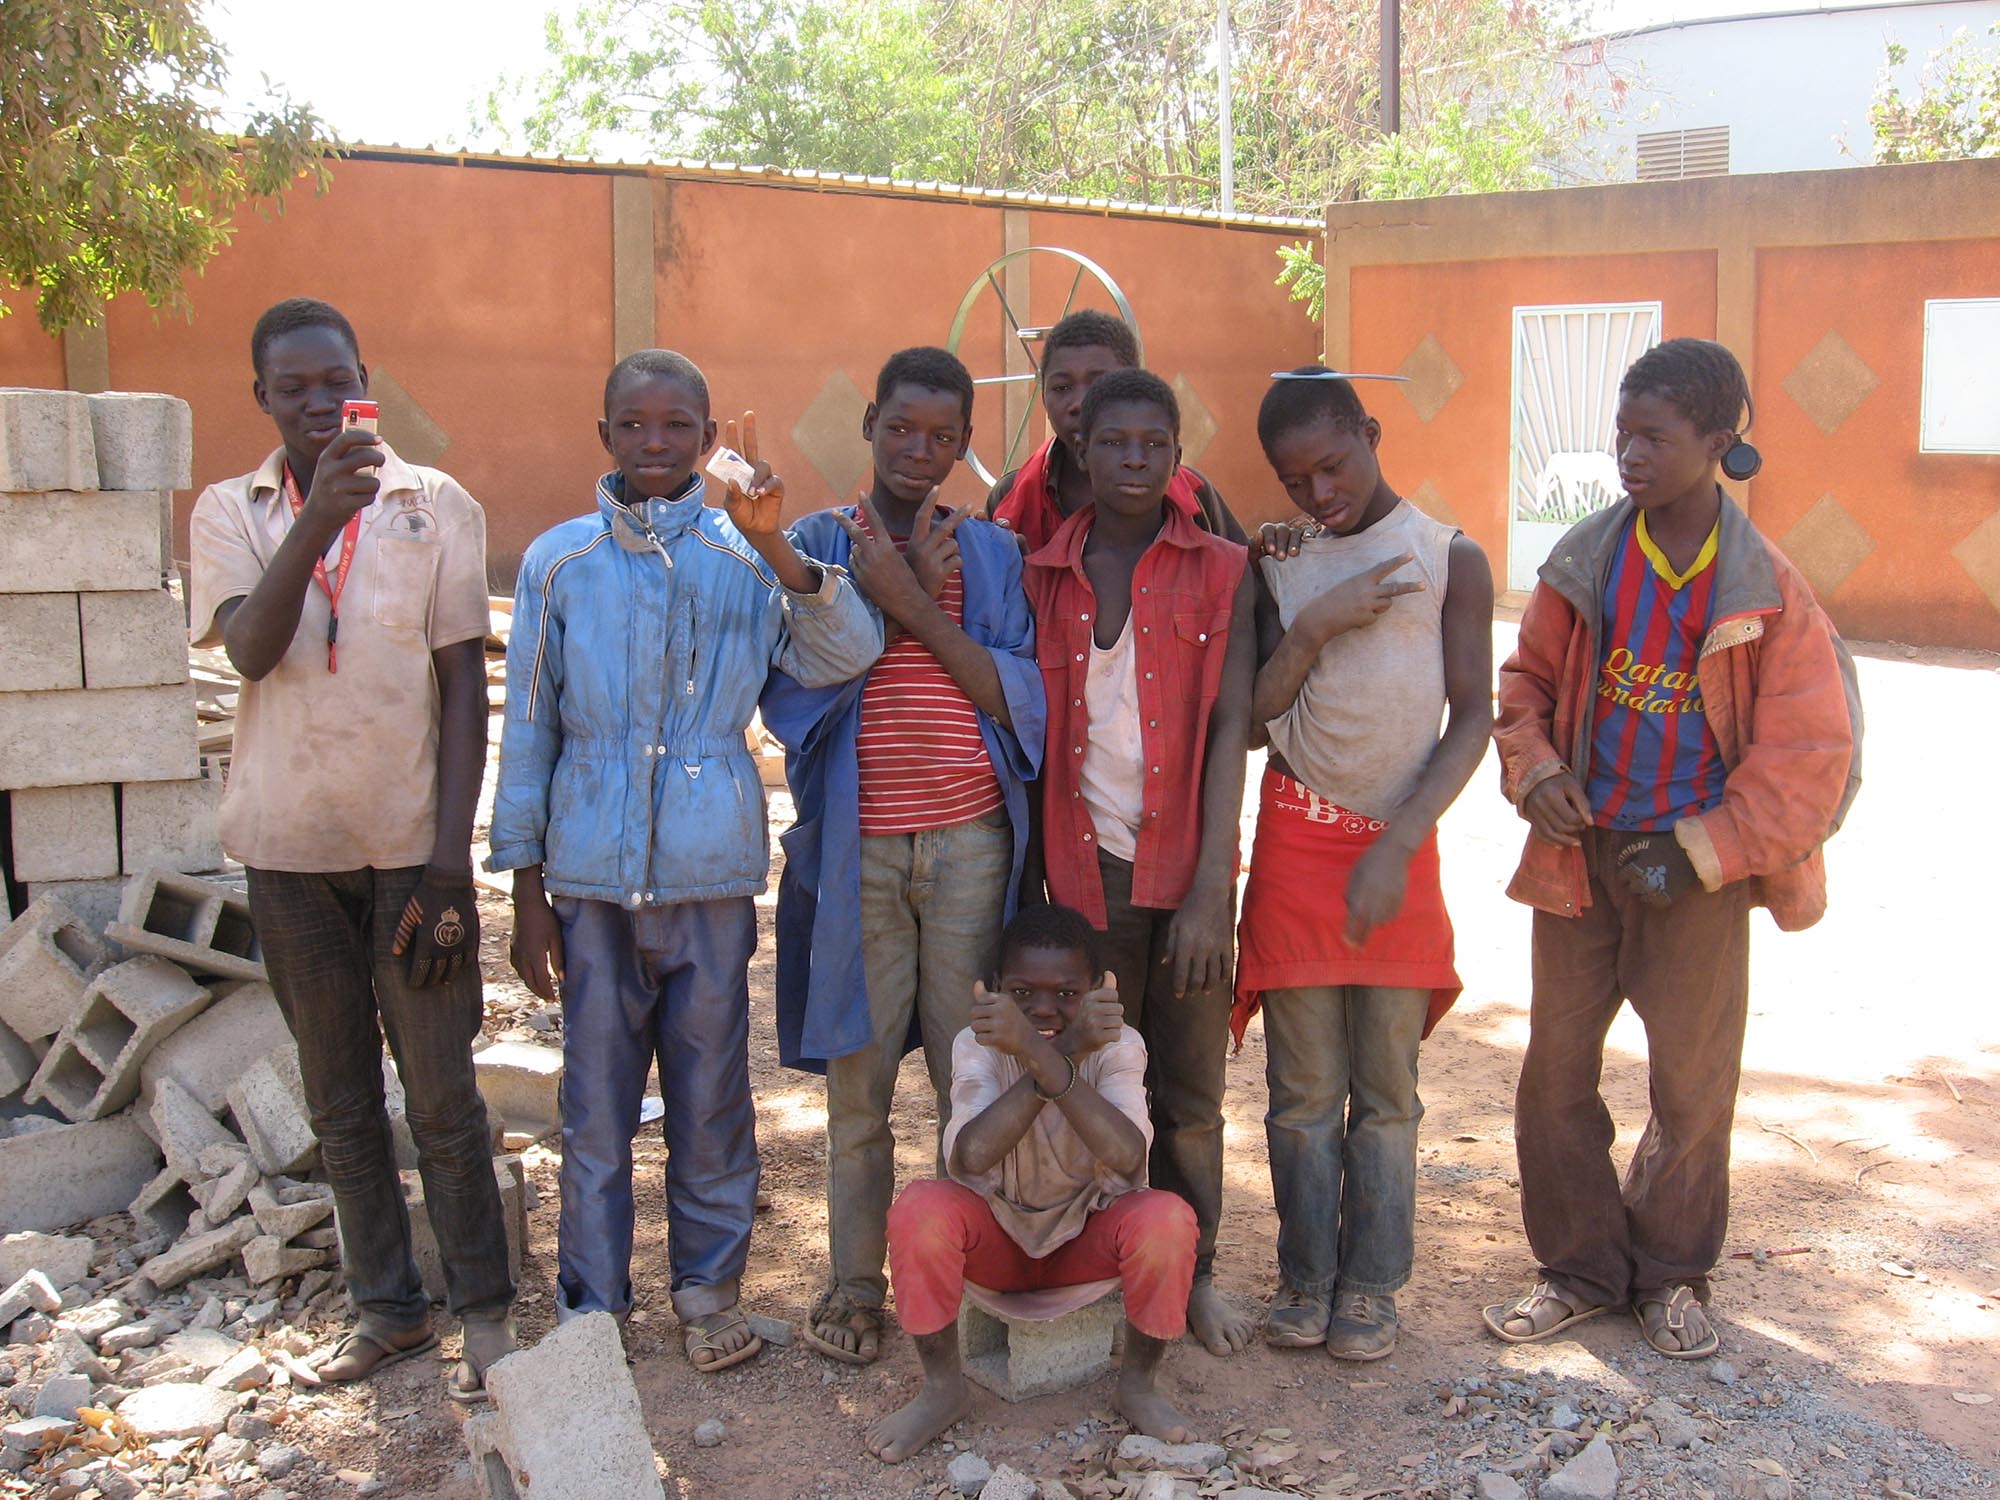 2012: Bambini di strada a Ouagadougou